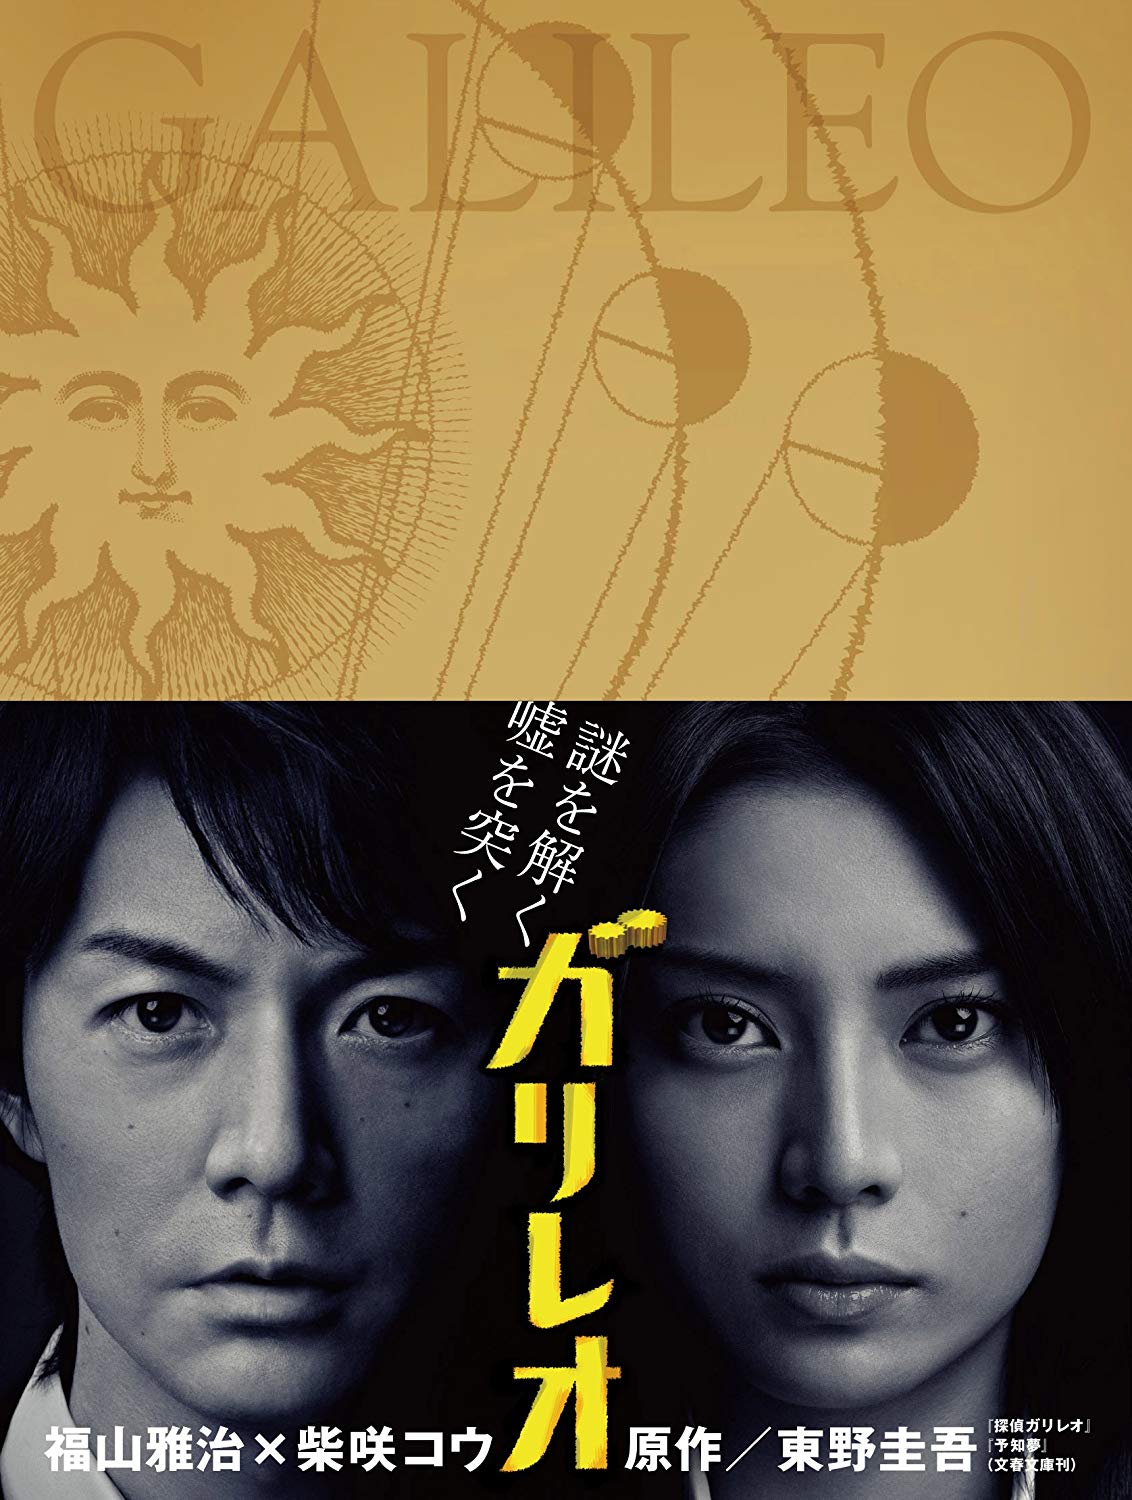 唐沢寿明のドラマ 映画おすすめランキング32選 21最新版 Rank1 ランク1 人気ランキングまとめサイト 国内最大級